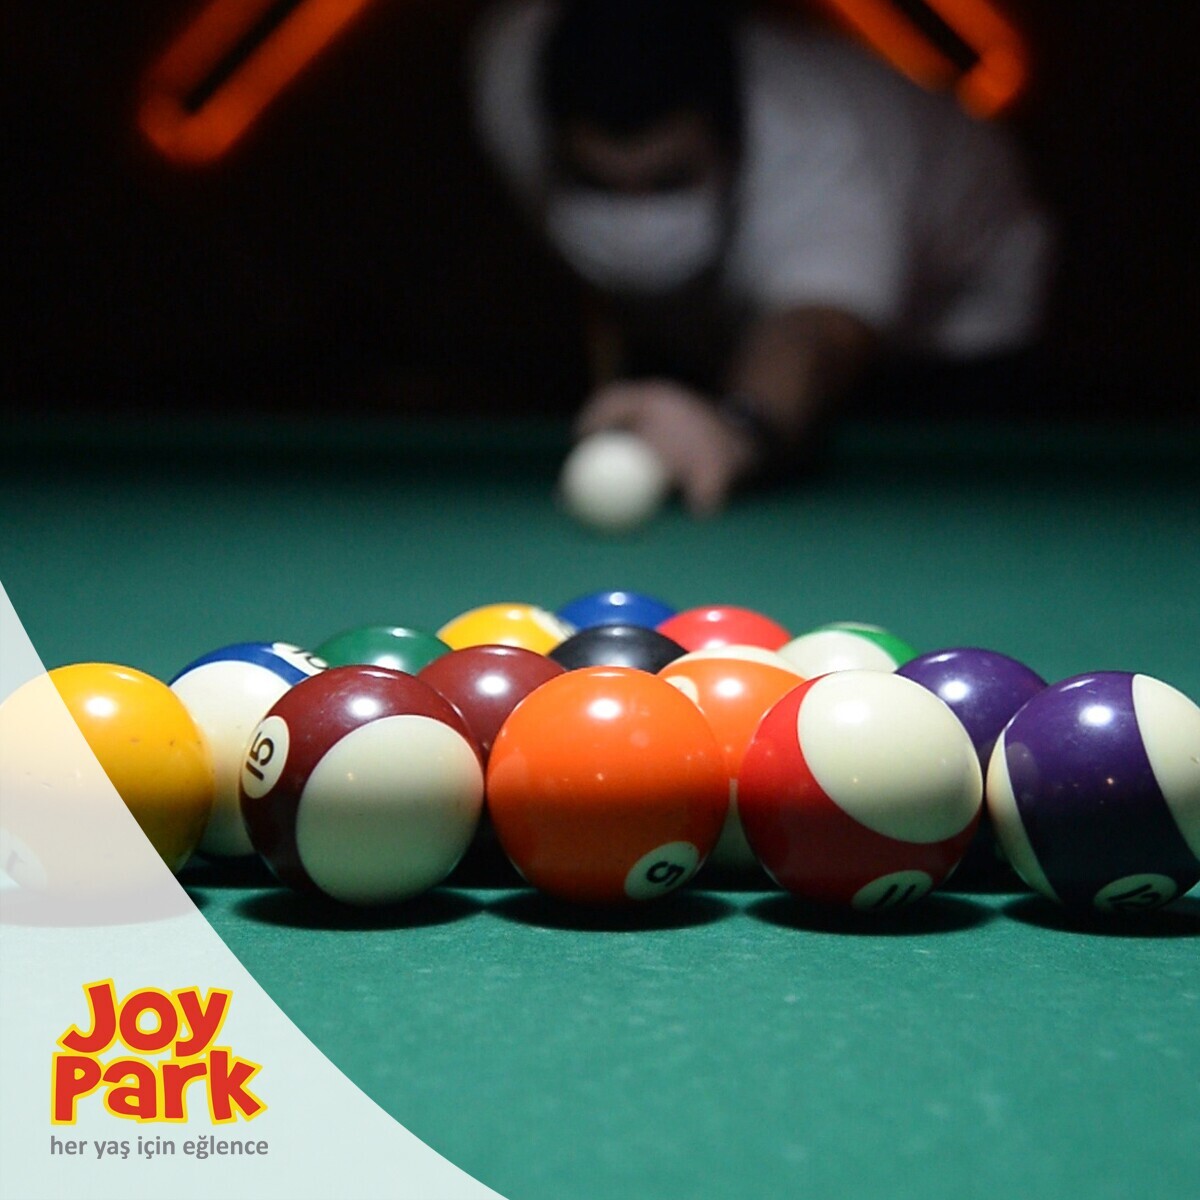 JoyPark İstanbul Şubelerinde Geçerli 250 TL'lik Oyun Kartı 199 TL!